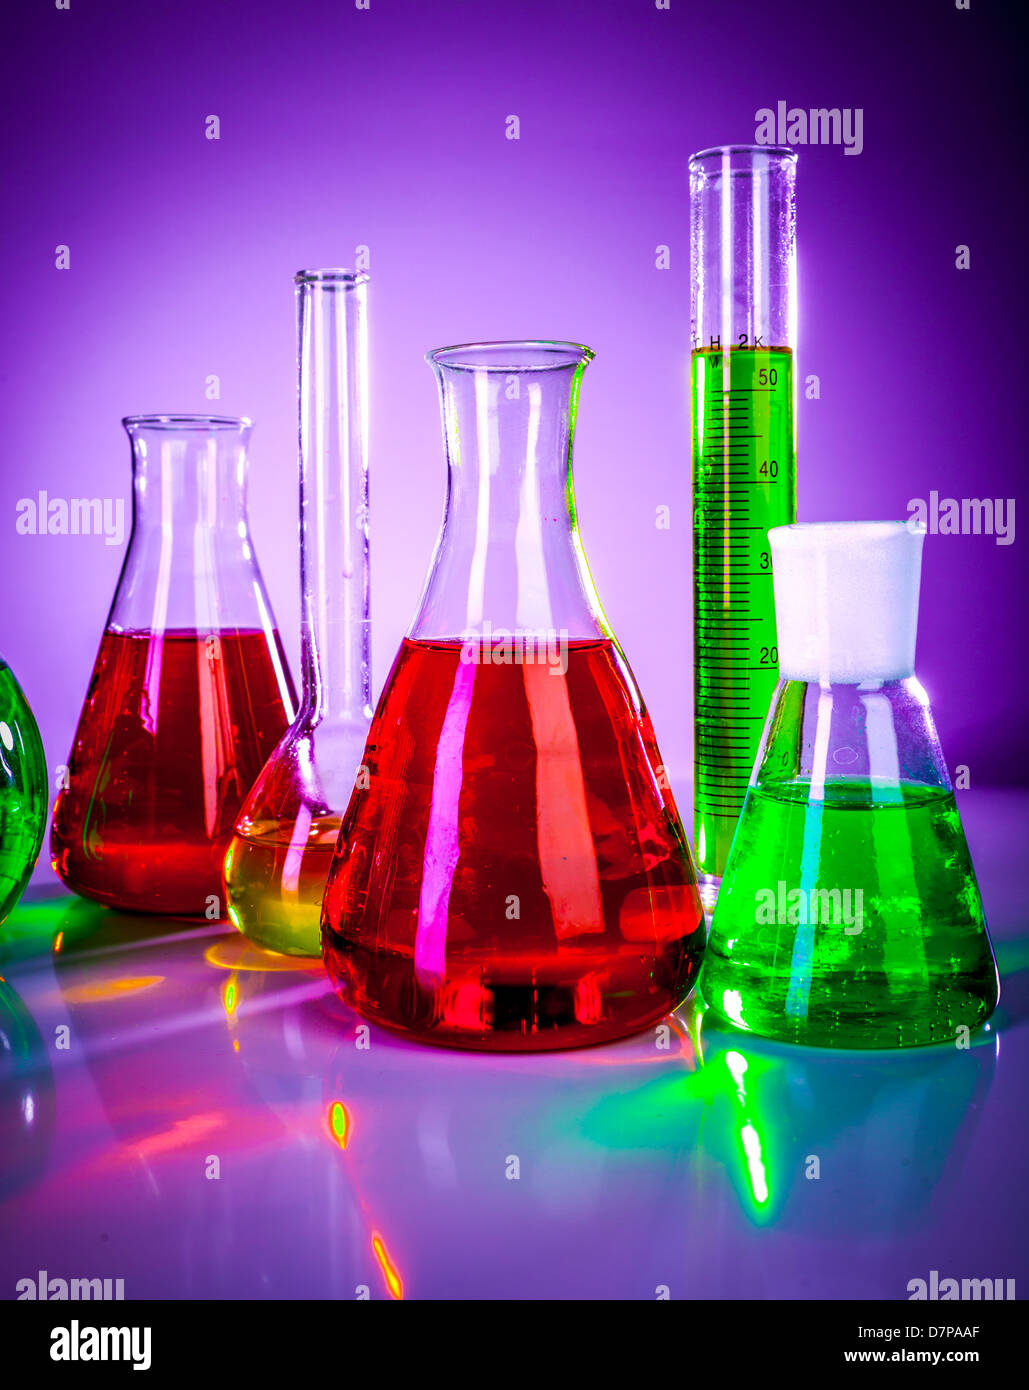 Glasröhren-Test im Labor auf lila Hintergrund Stockfoto